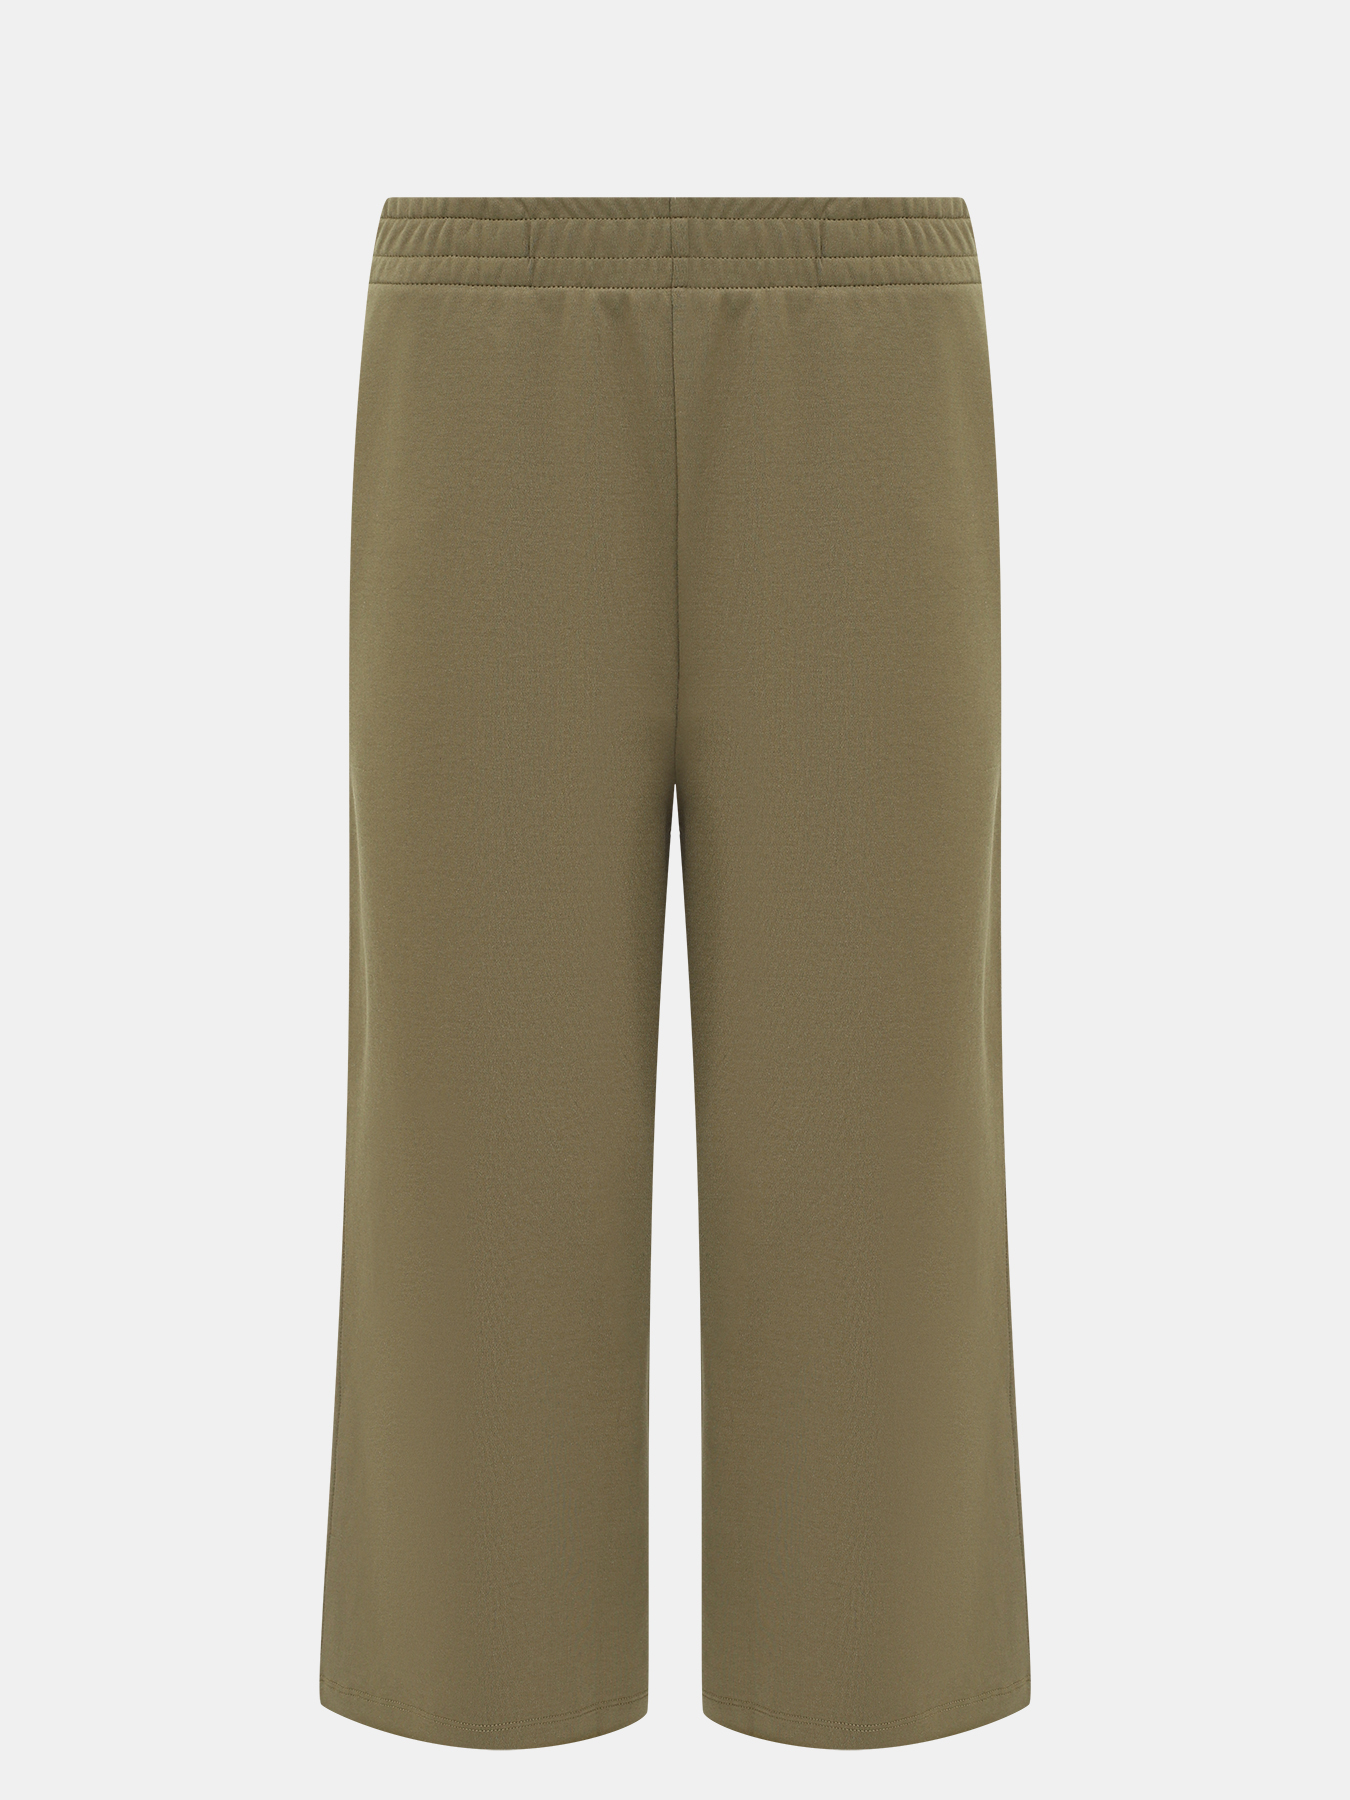 Спортивные брюки Enatea BOSS 414132-041, цвет хаки, размер 40-42 - фото 1